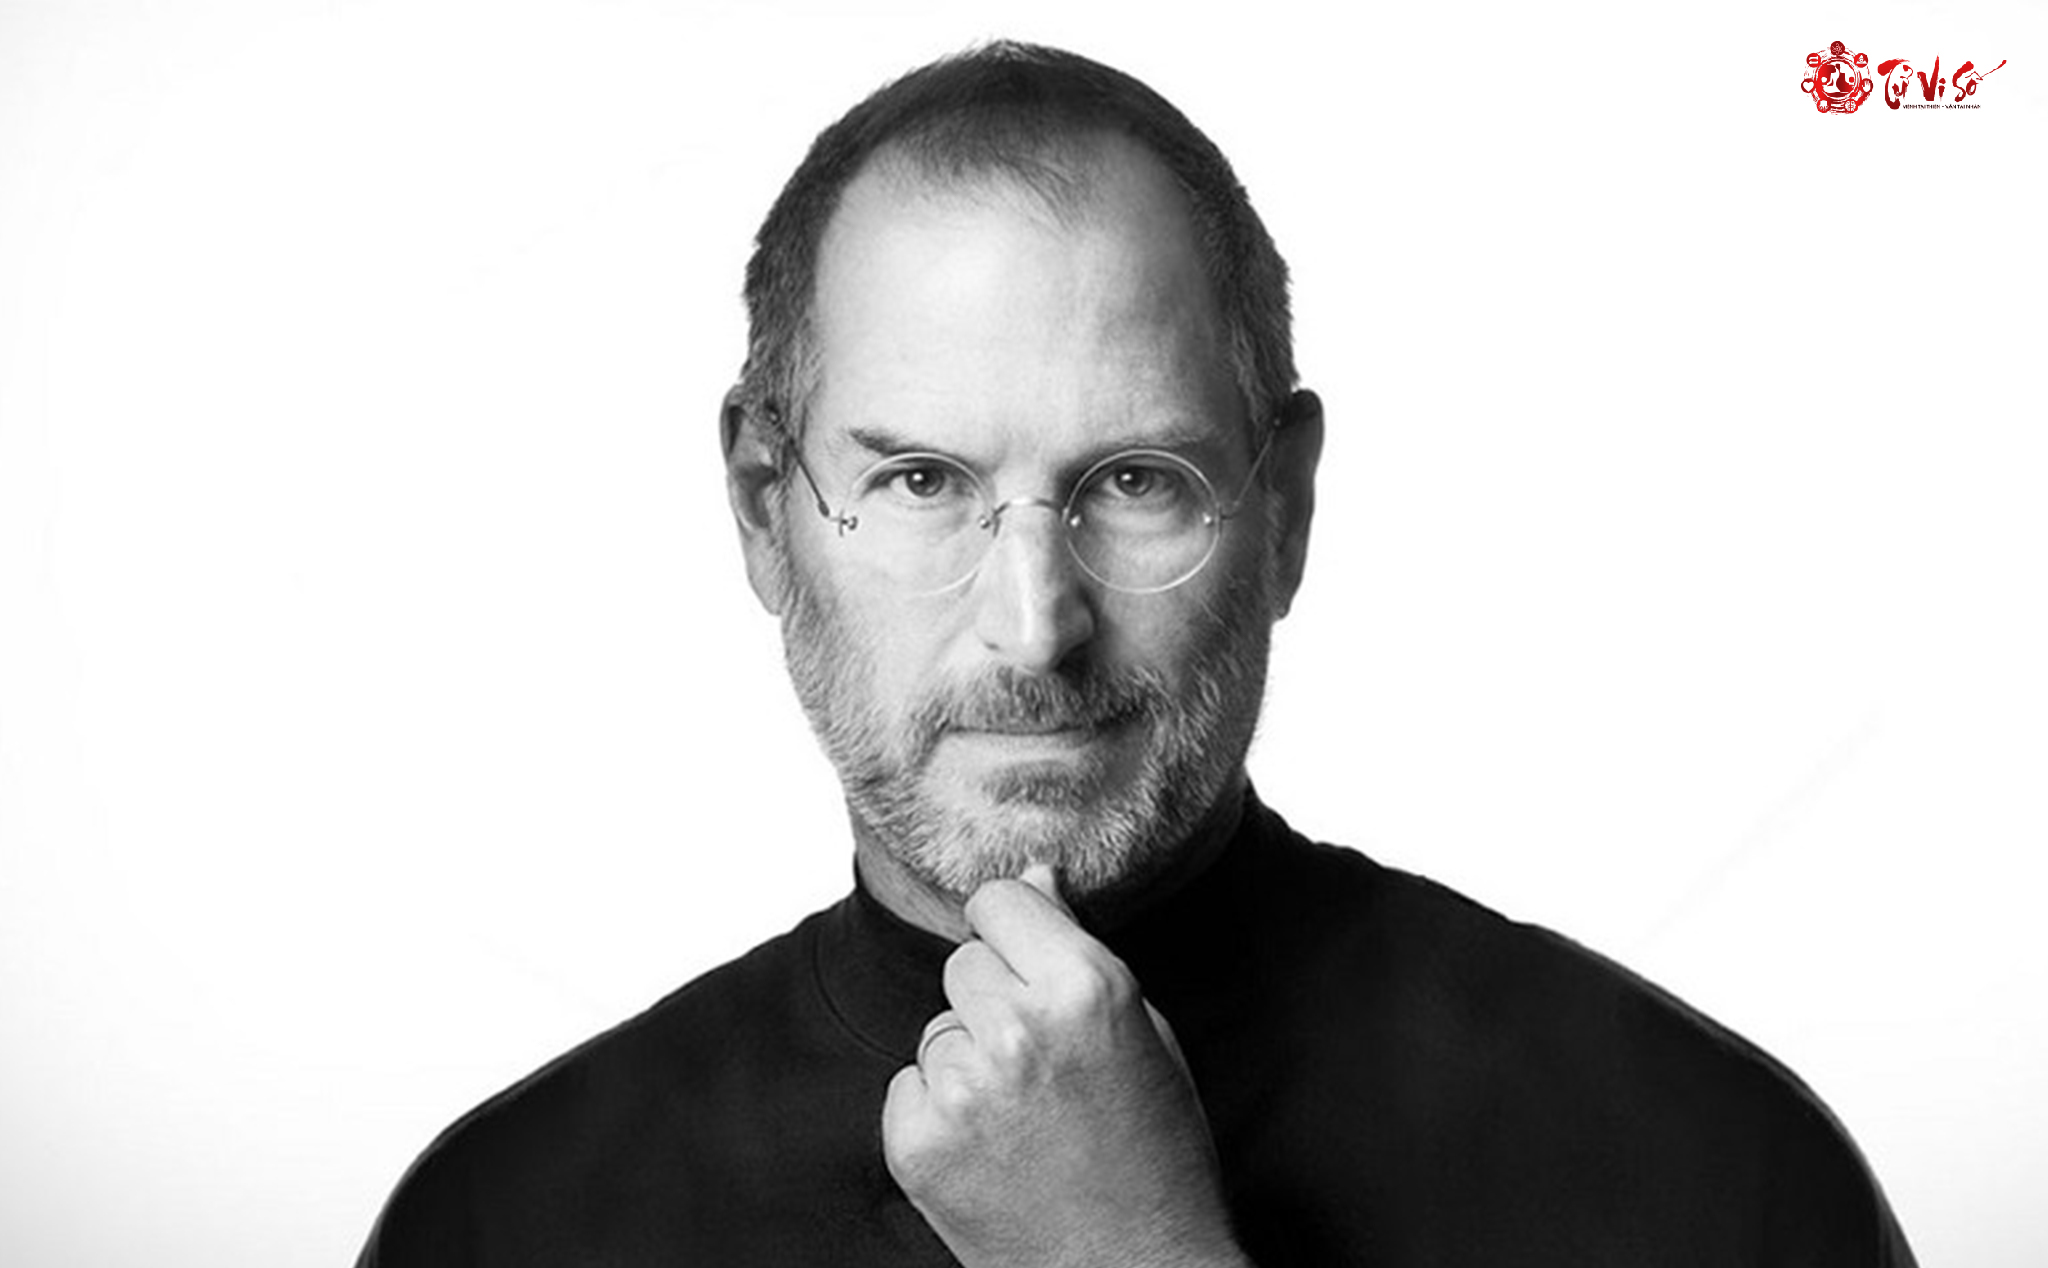 Steven Paul "Steve" Jobs (24 tháng 2 năm 1955, mệnh Kim) là doanh nhân và nhà sáng chế người Mỹ